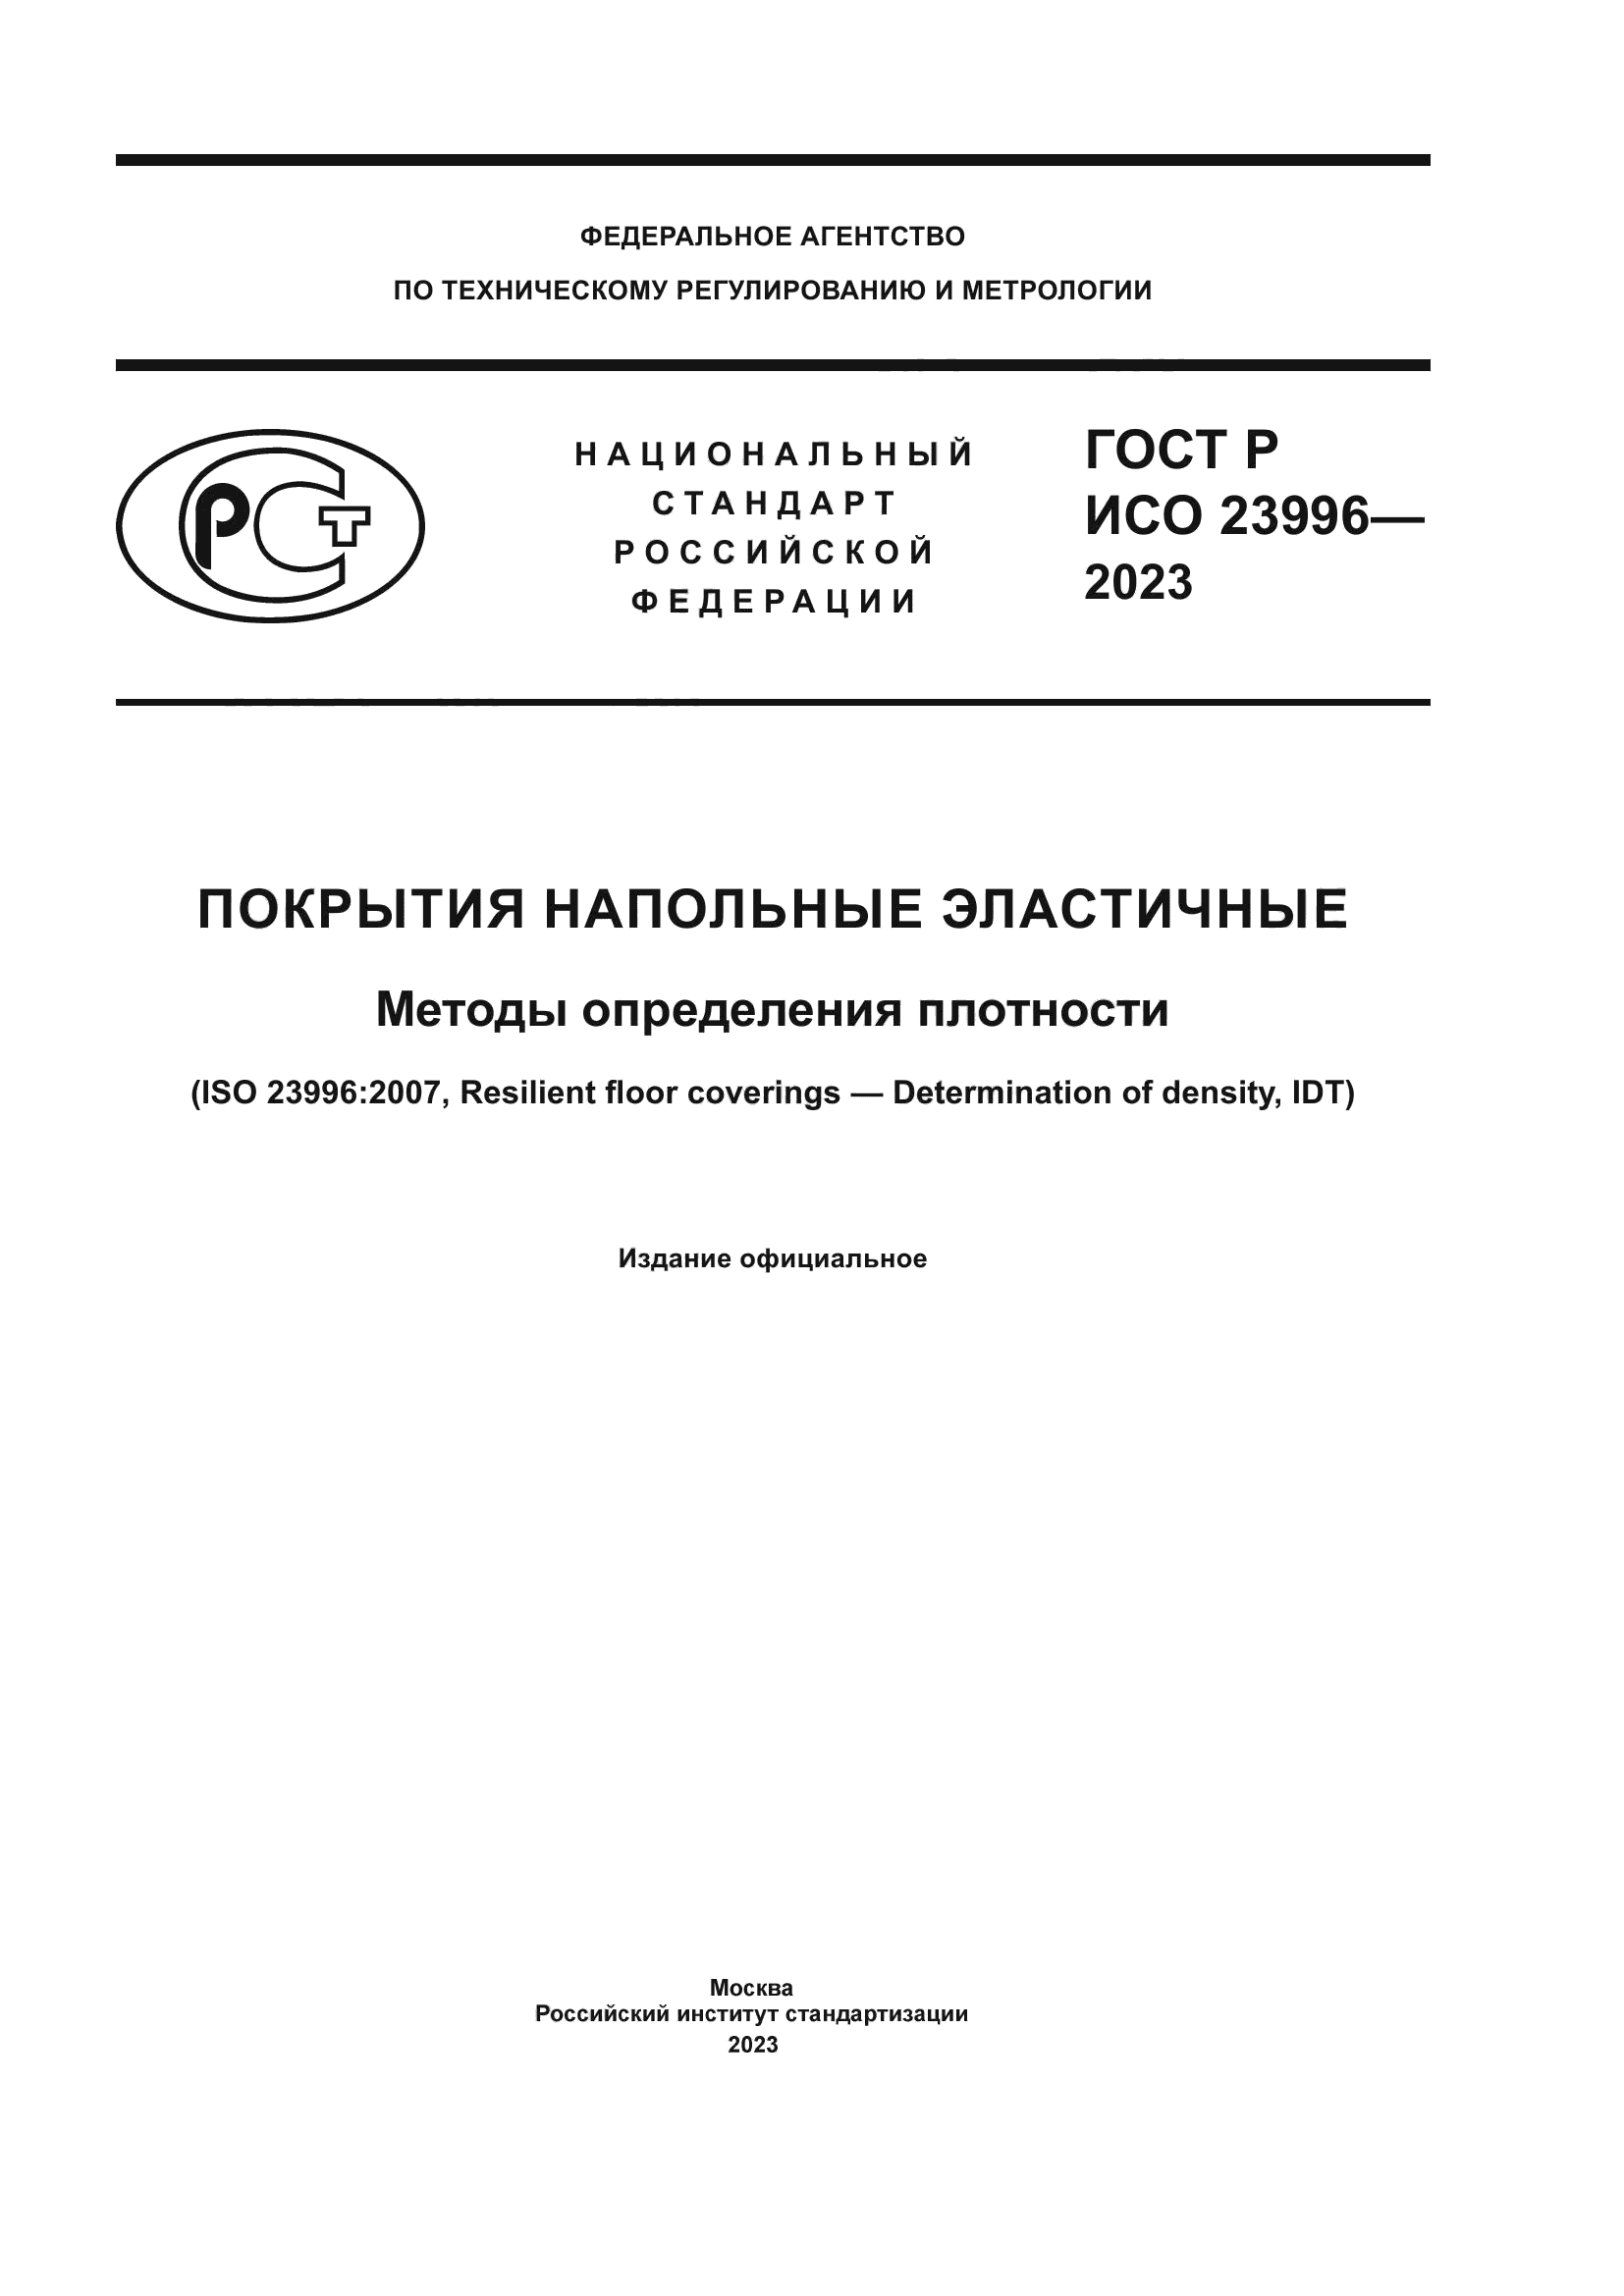 ГОСТ Р ИСО 23996-2023